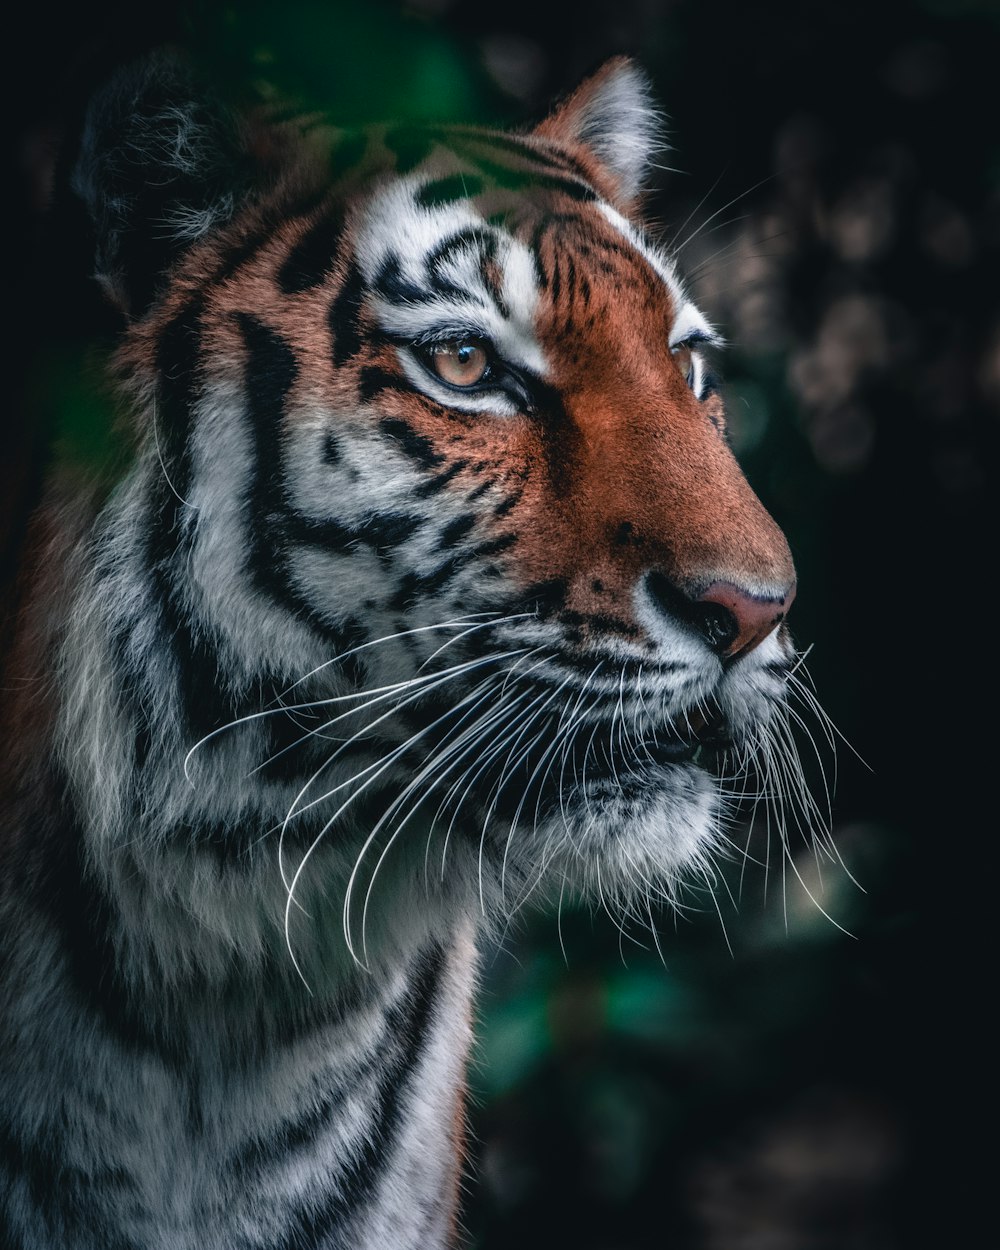 tigre marrom e preto na fotografia de perto